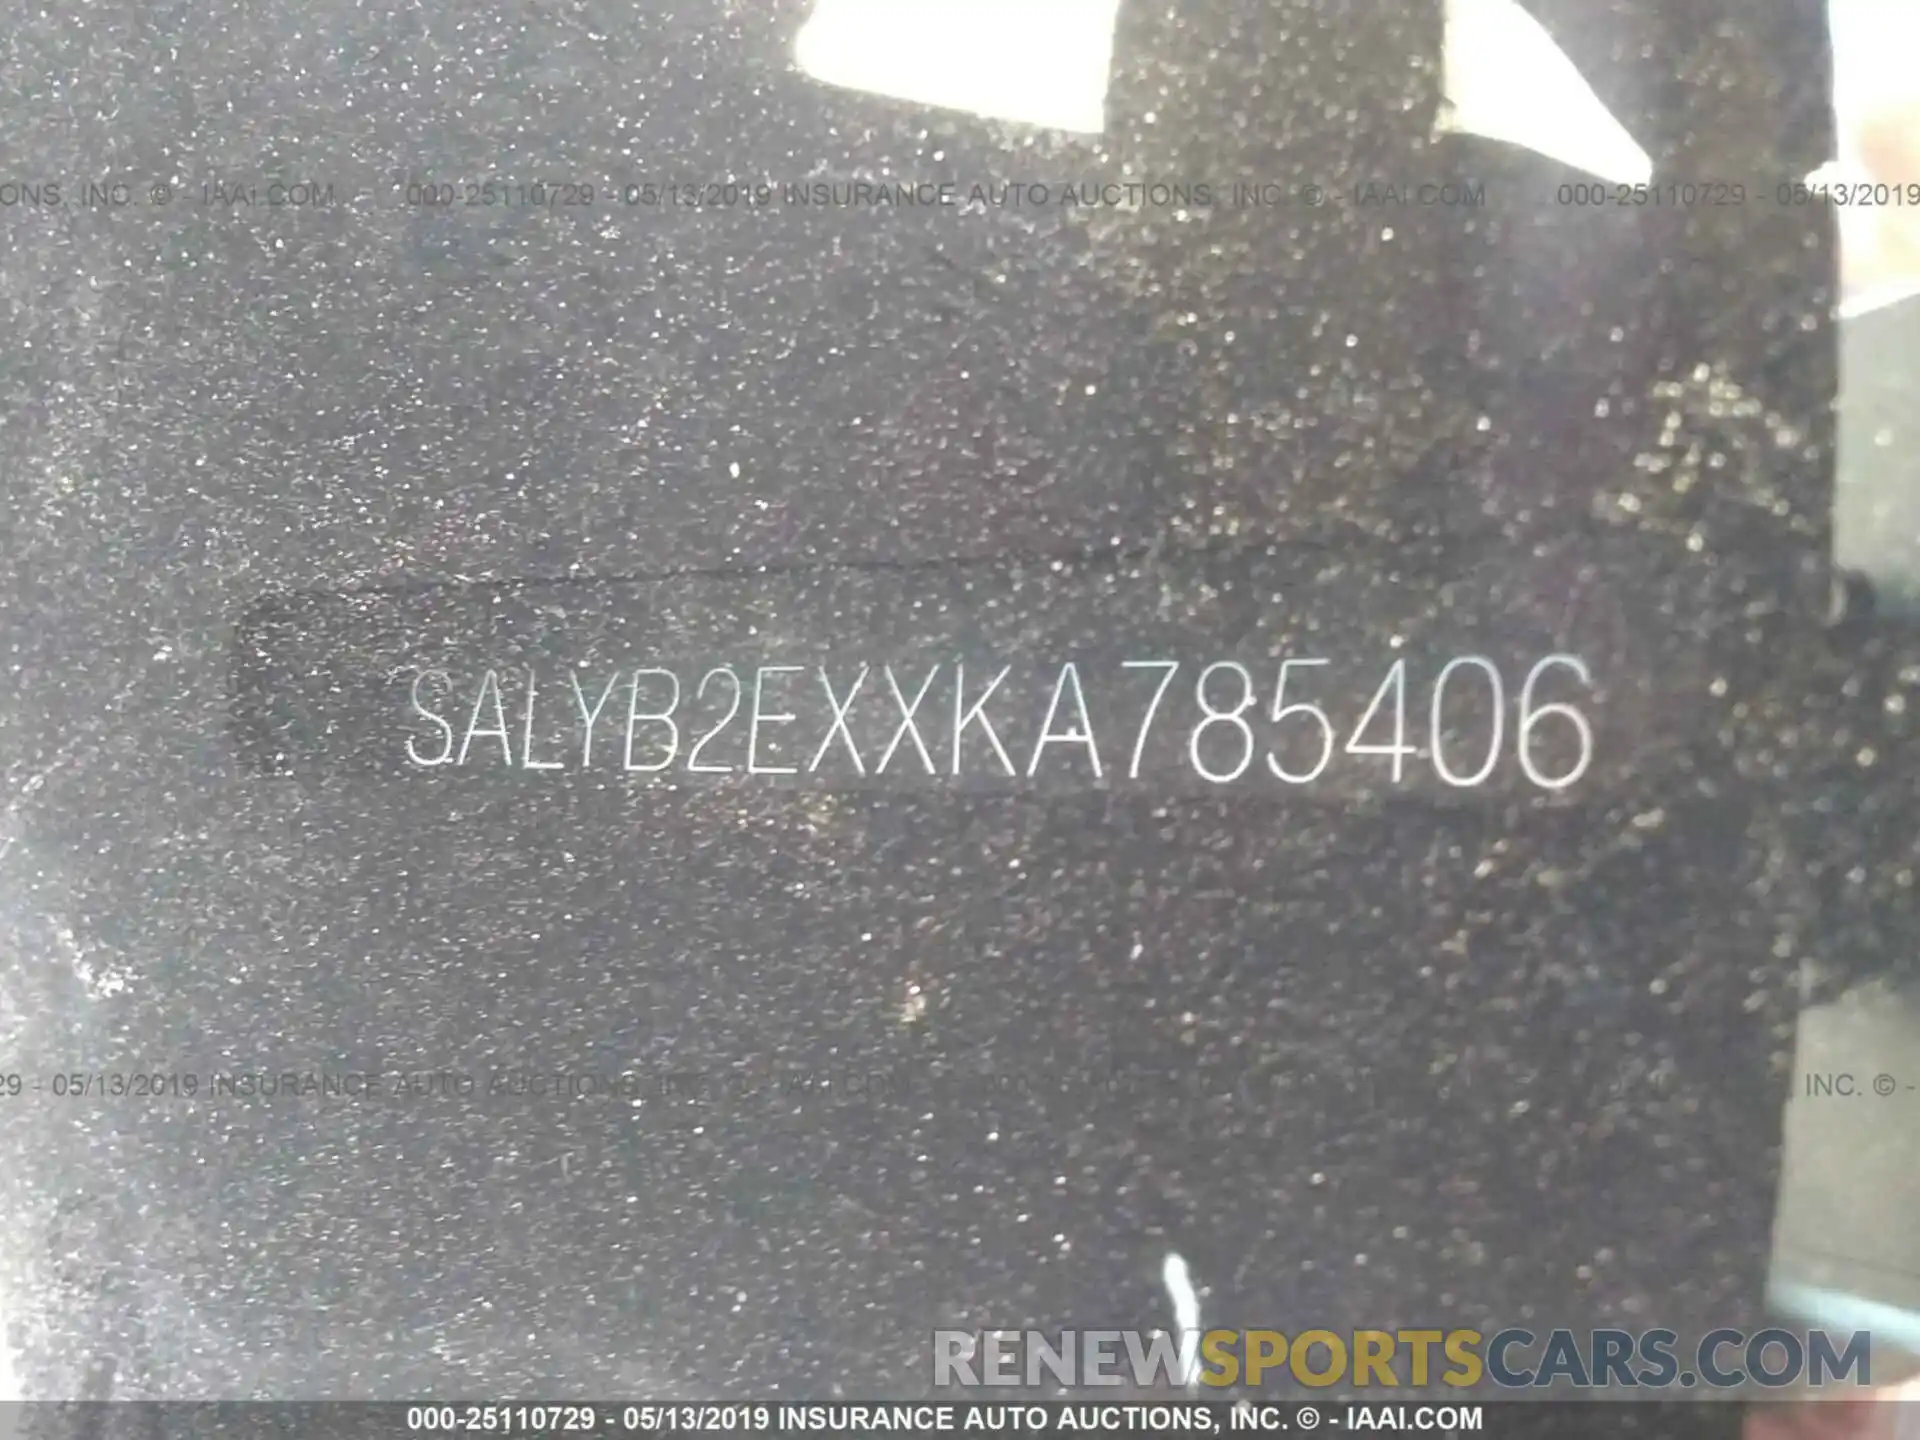 9 Photograph of a damaged car SALYB2EXXKA785406 LAND ROVER RANGE ROVER VELAR 2019